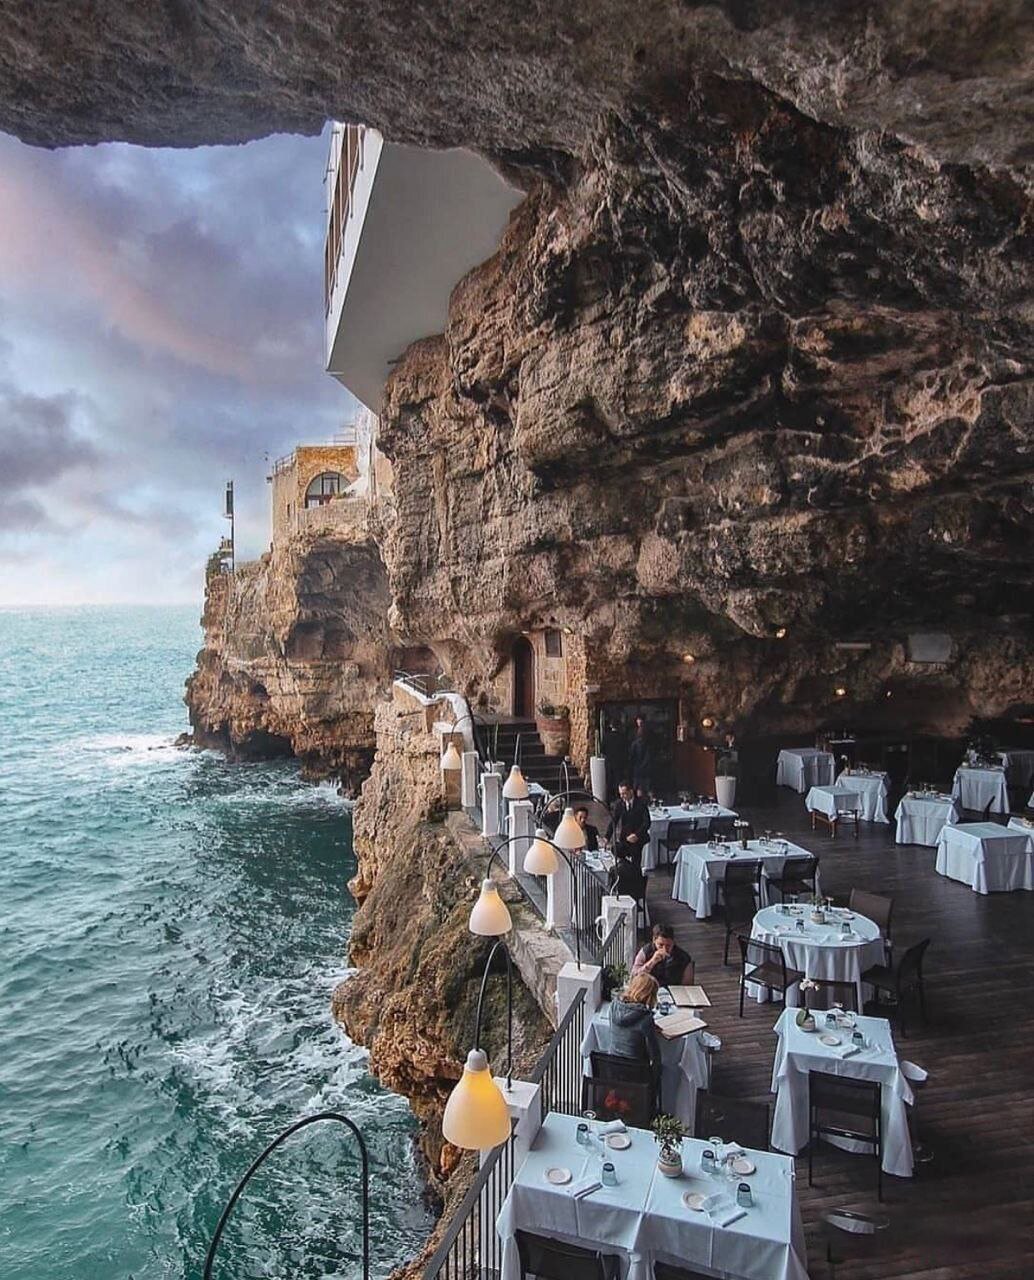 تصویری زیبا از یک رستوران در ایتالیا در غار!